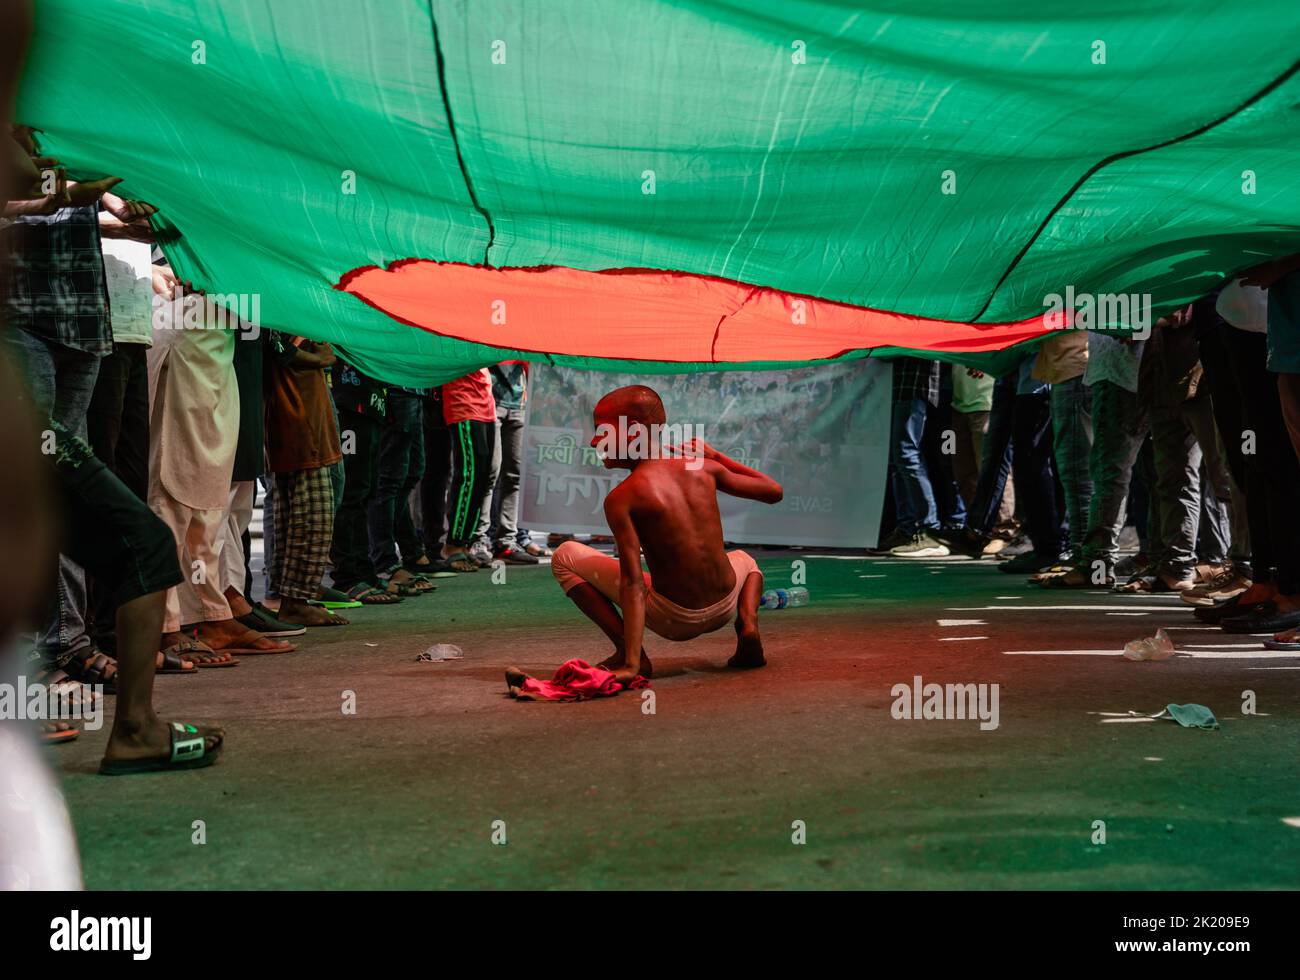 Die bangladeschische Fußballnationalmannschaft der Frauen kehrt Dhaka zurück, nachdem sie das SAFF-Frauenturnier gewonnen hat, und die Menschen feiern dort den Sieg. Stockfoto